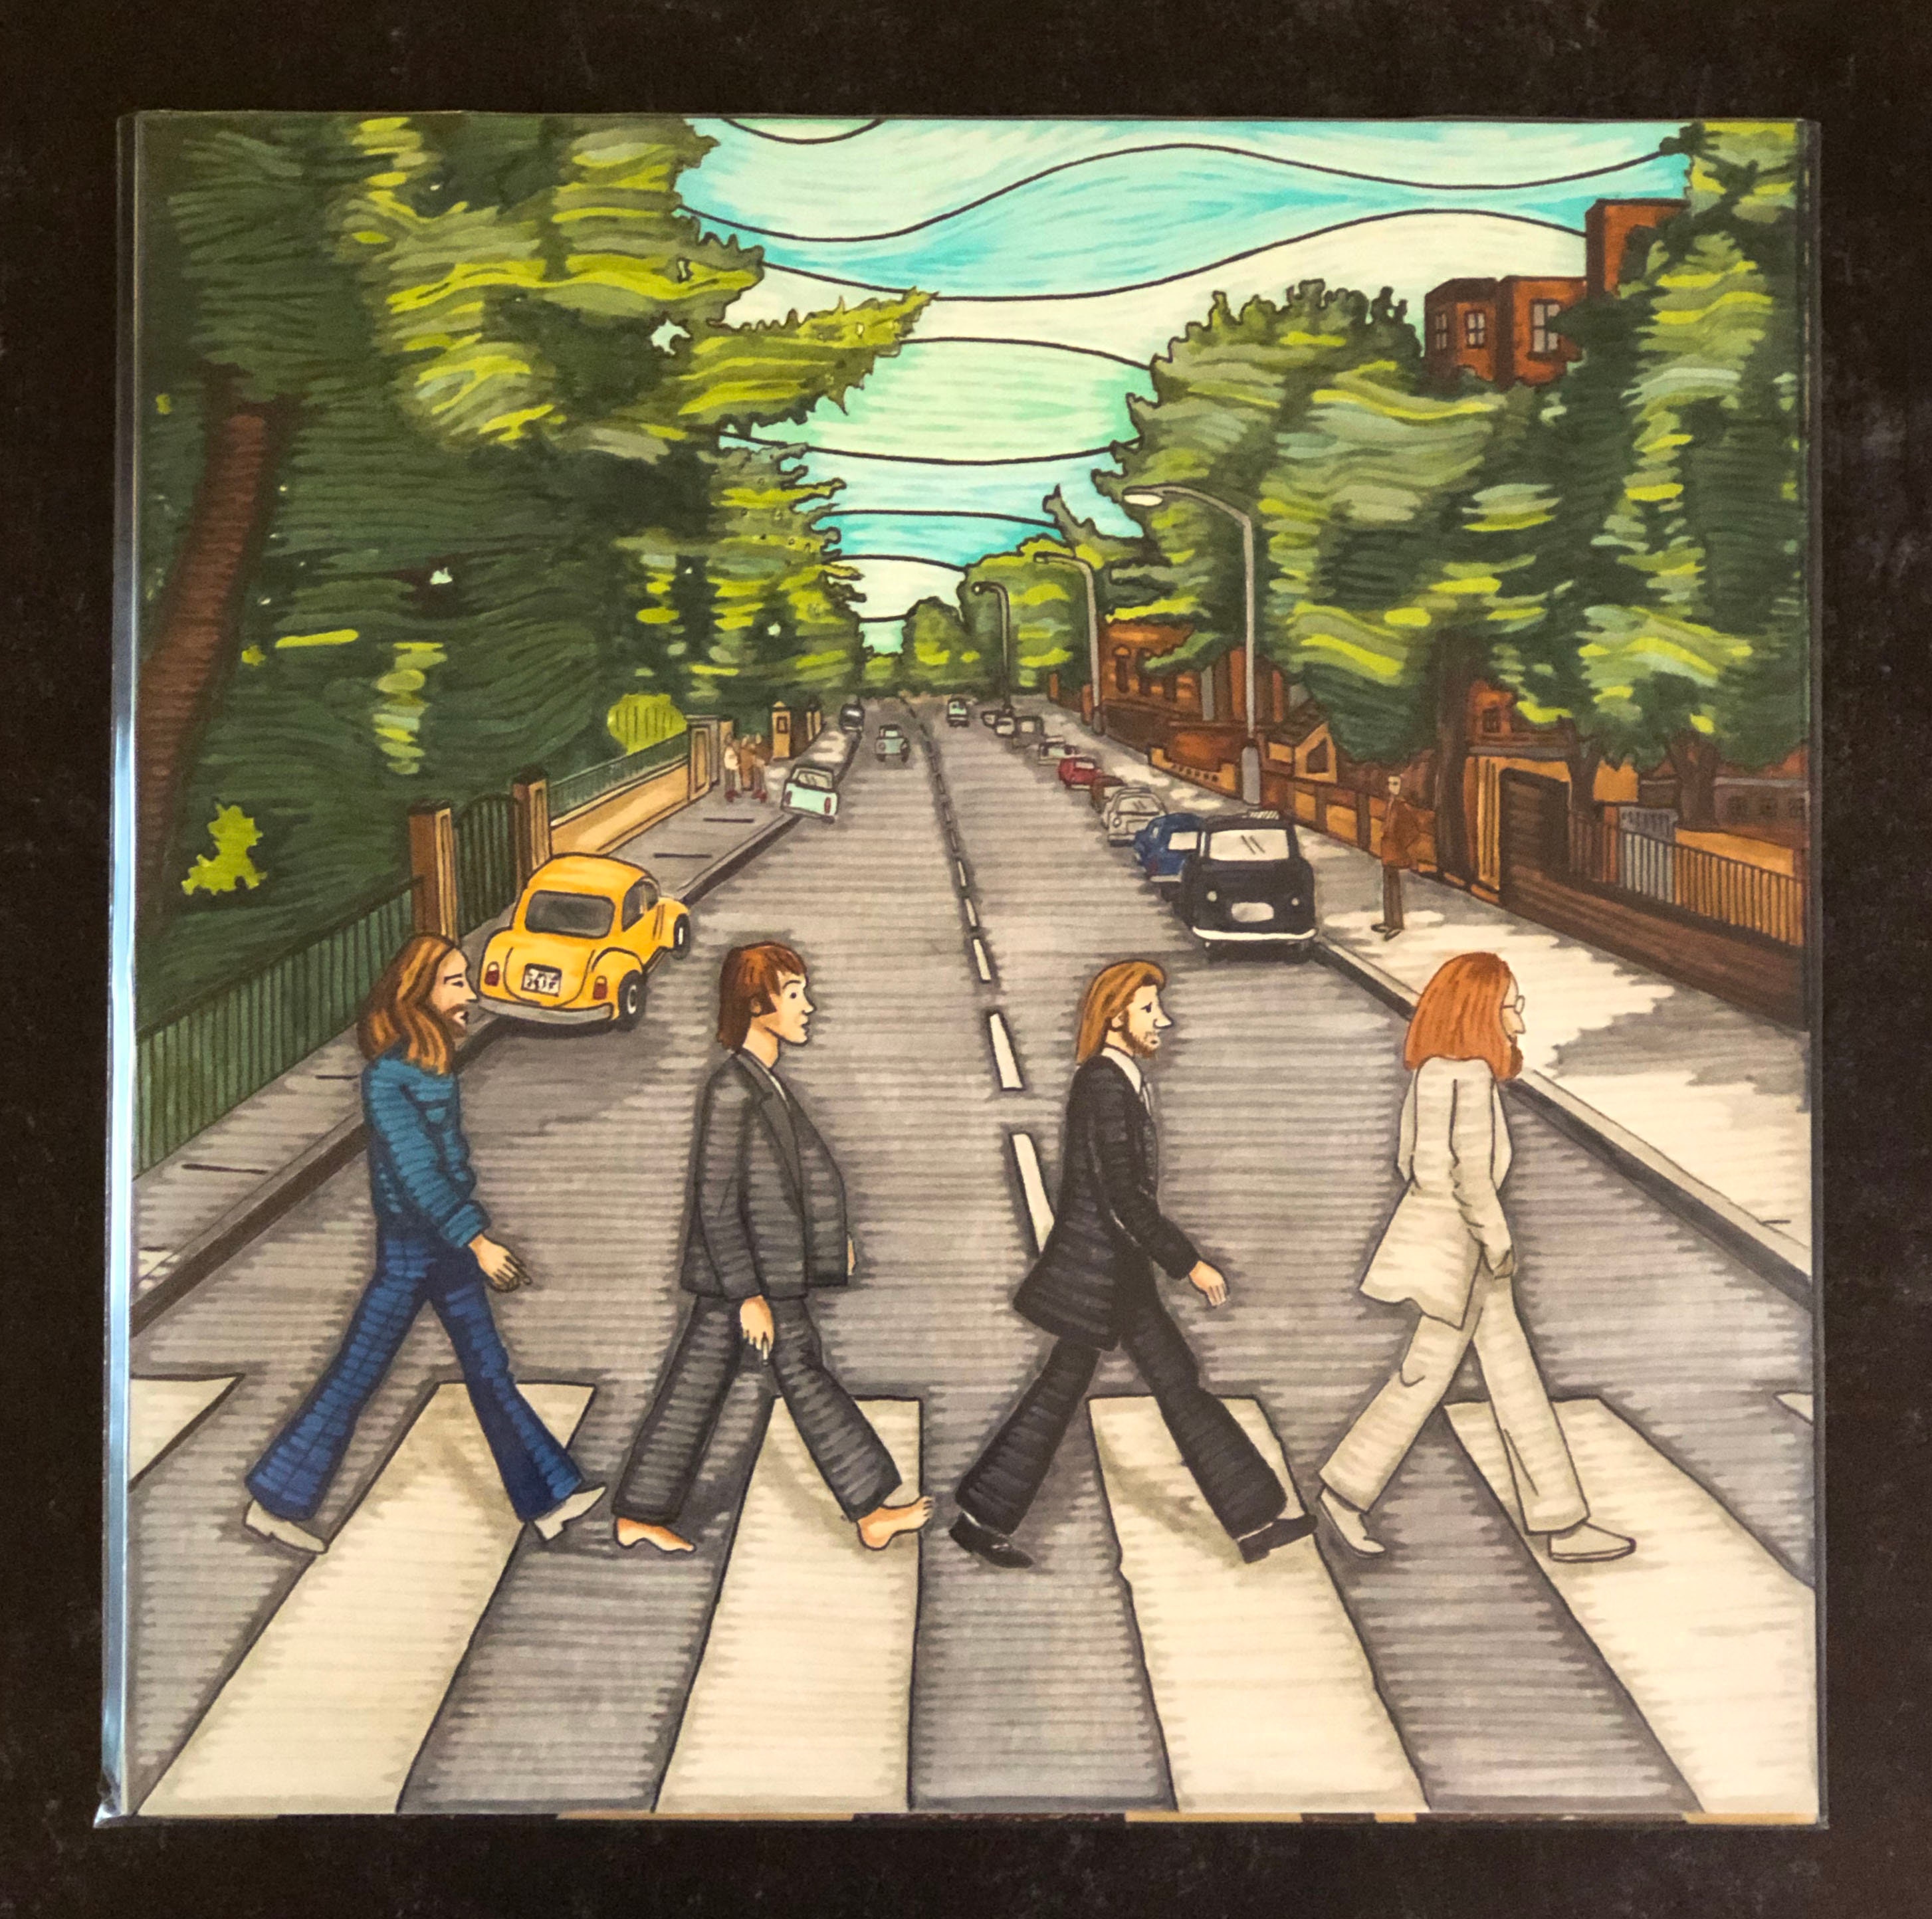 The Beatles Abbey Road original album cover art plus album - Etsy 日本